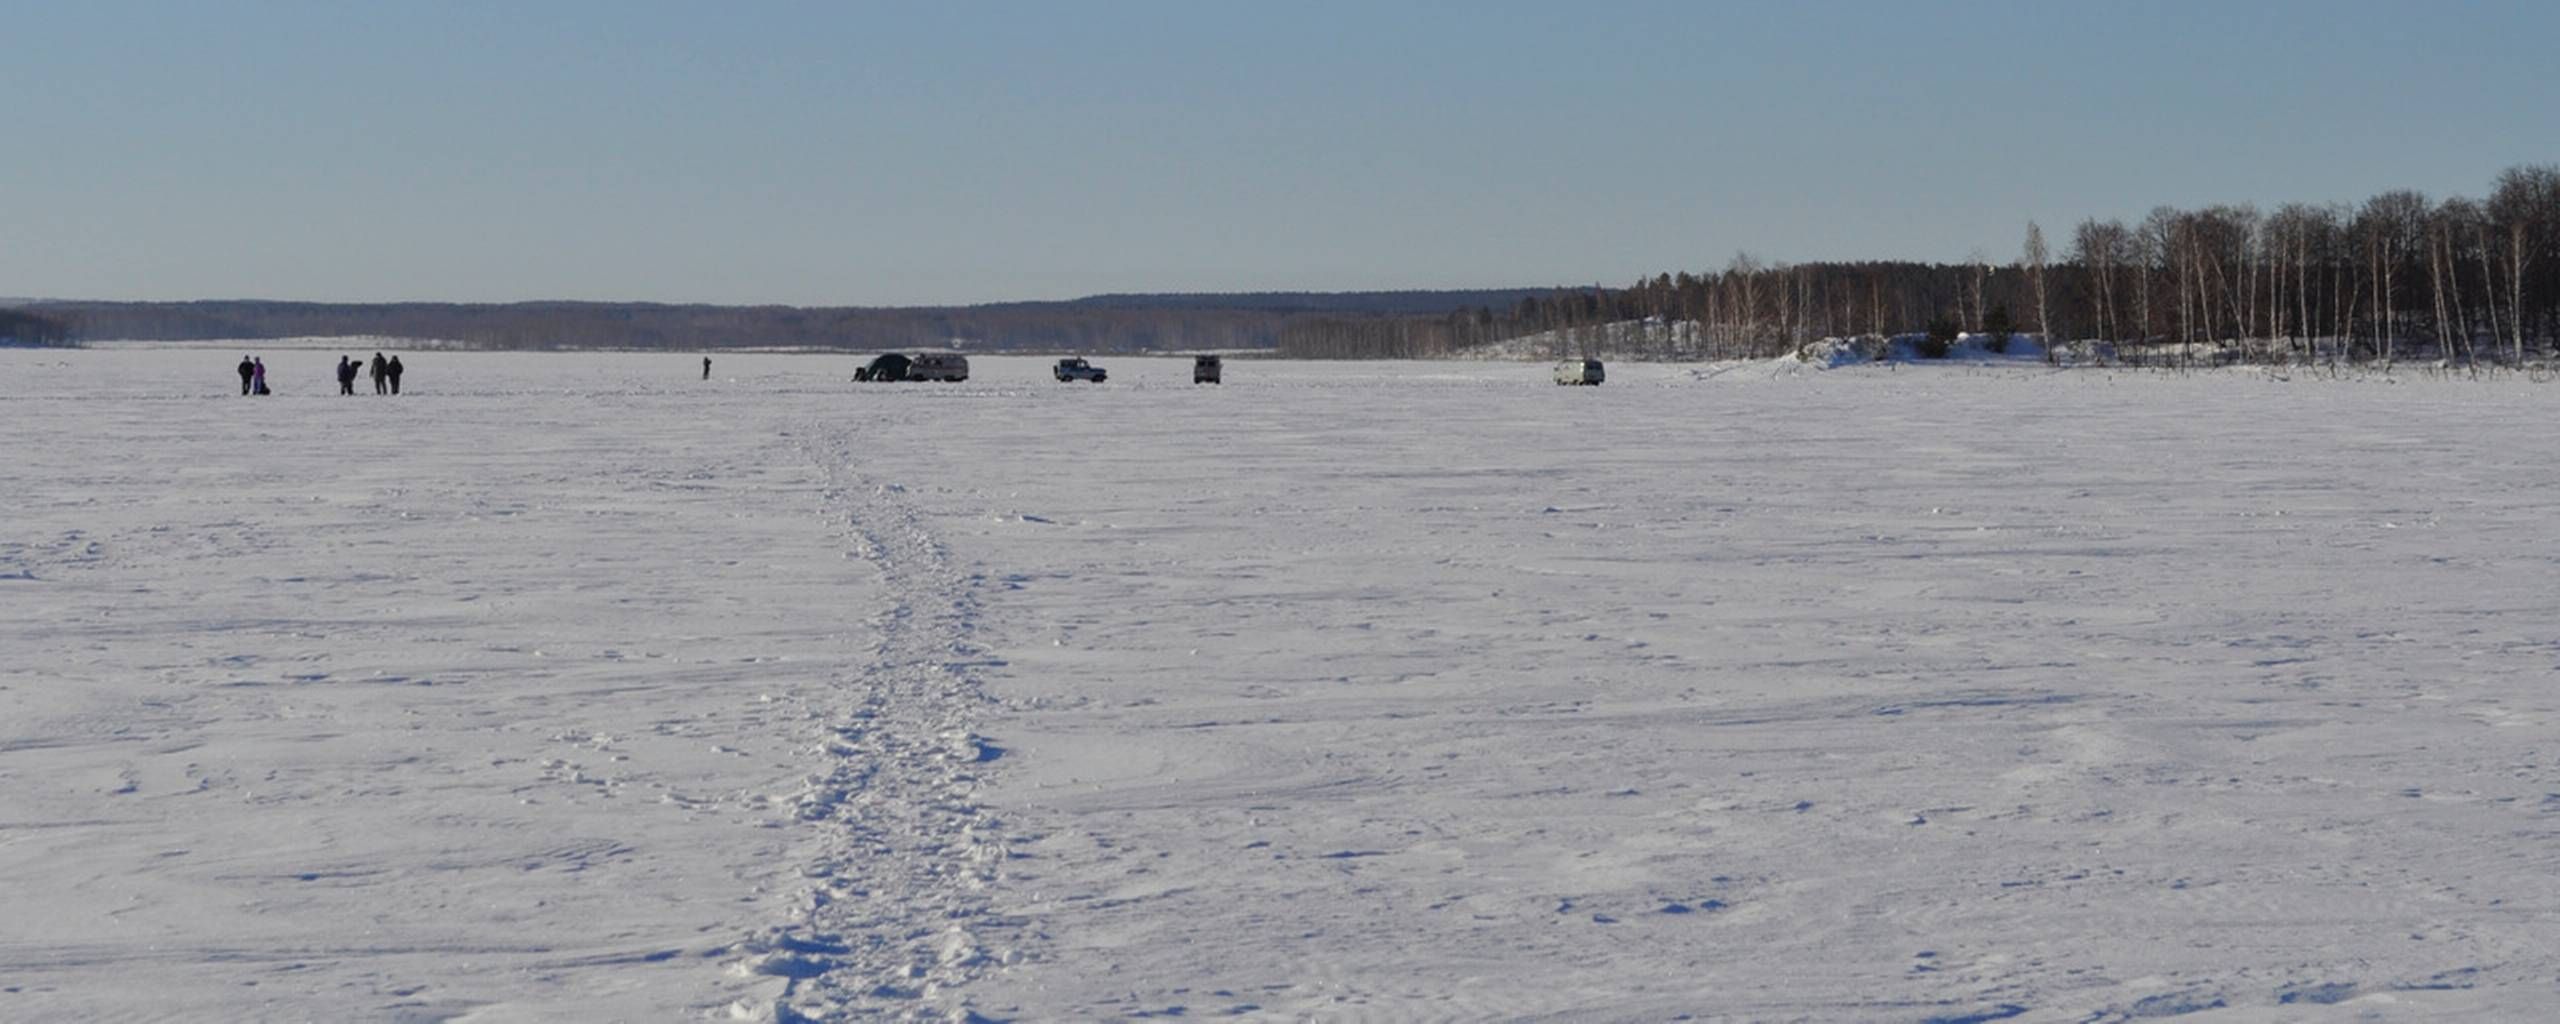 Rester af meteor fundet i russisk sø